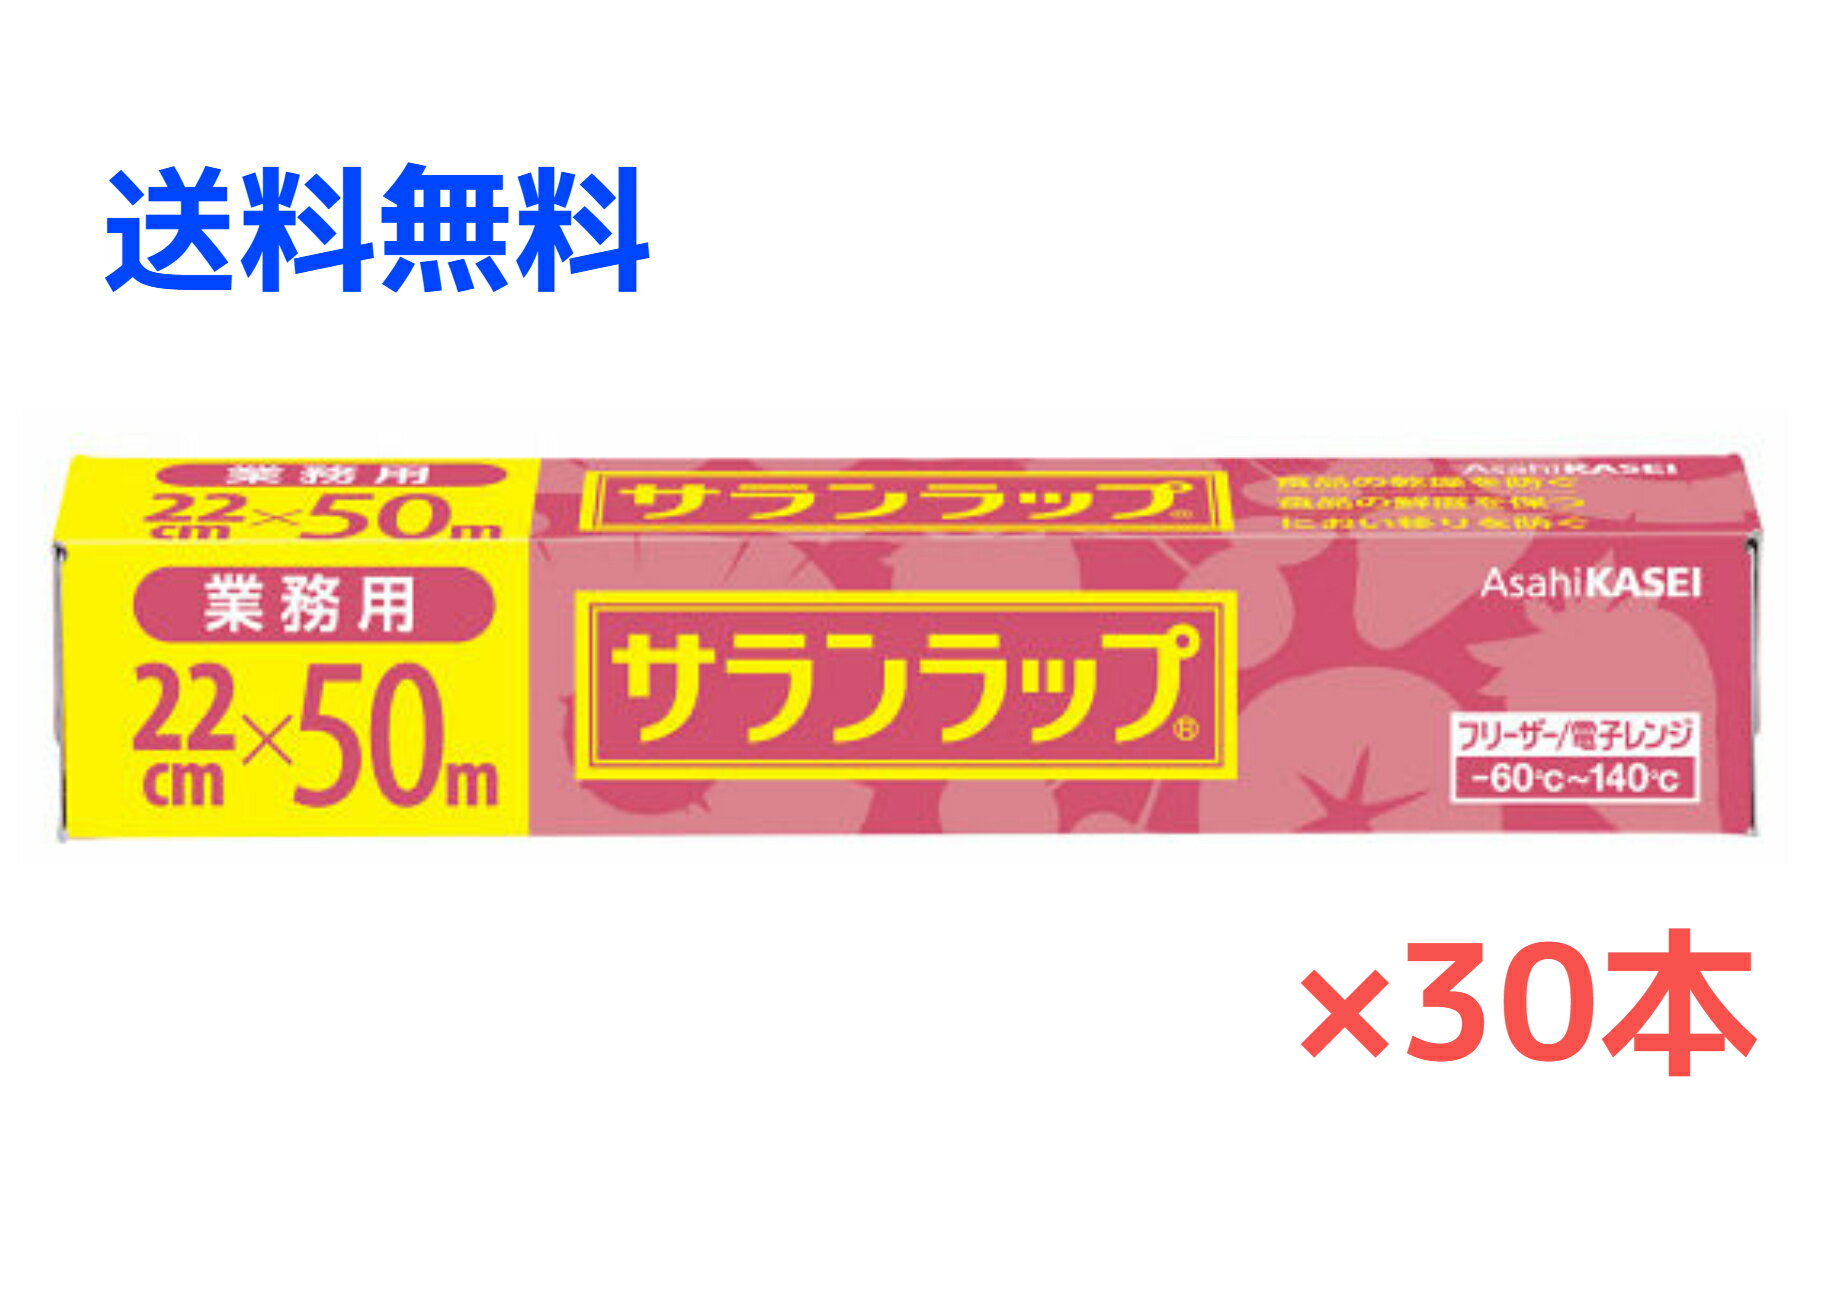 【30本】旭化成ホームプロダクツ サランラップ 業務用 BOXタイプ 22cm×50m 30本 1ケース【送料無料】